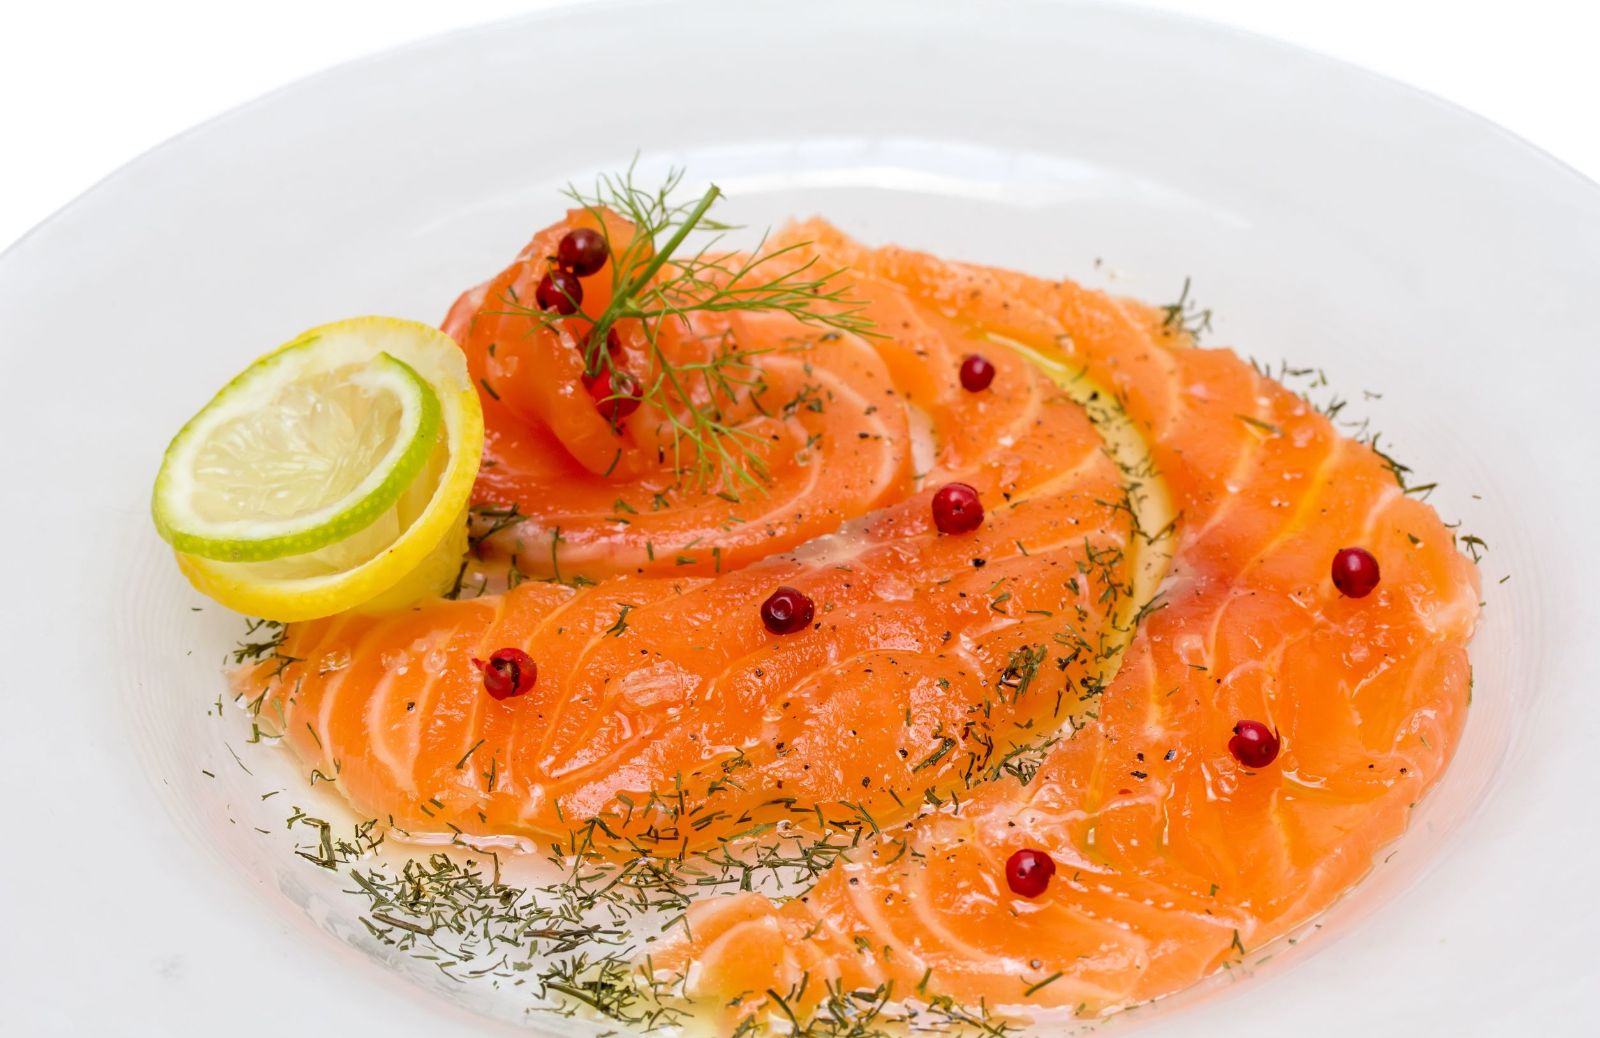 Carpaccio di salmone marinato: la ricetta dell’antipasto semplice e fresco